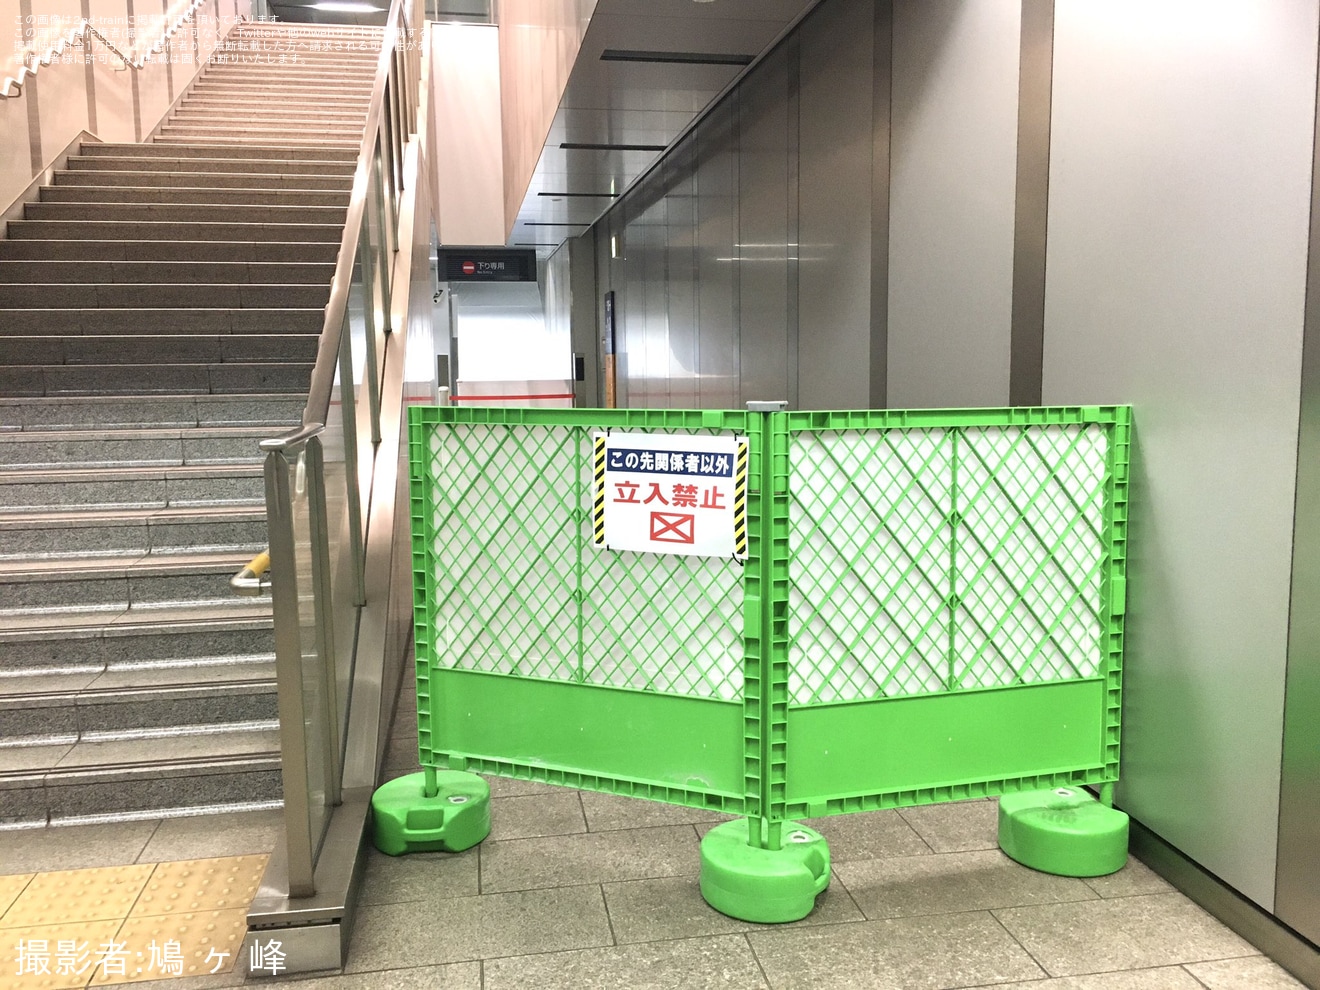 【京阪】なにわ橋駅の下りエスカレーターが使用終了の拡大写真